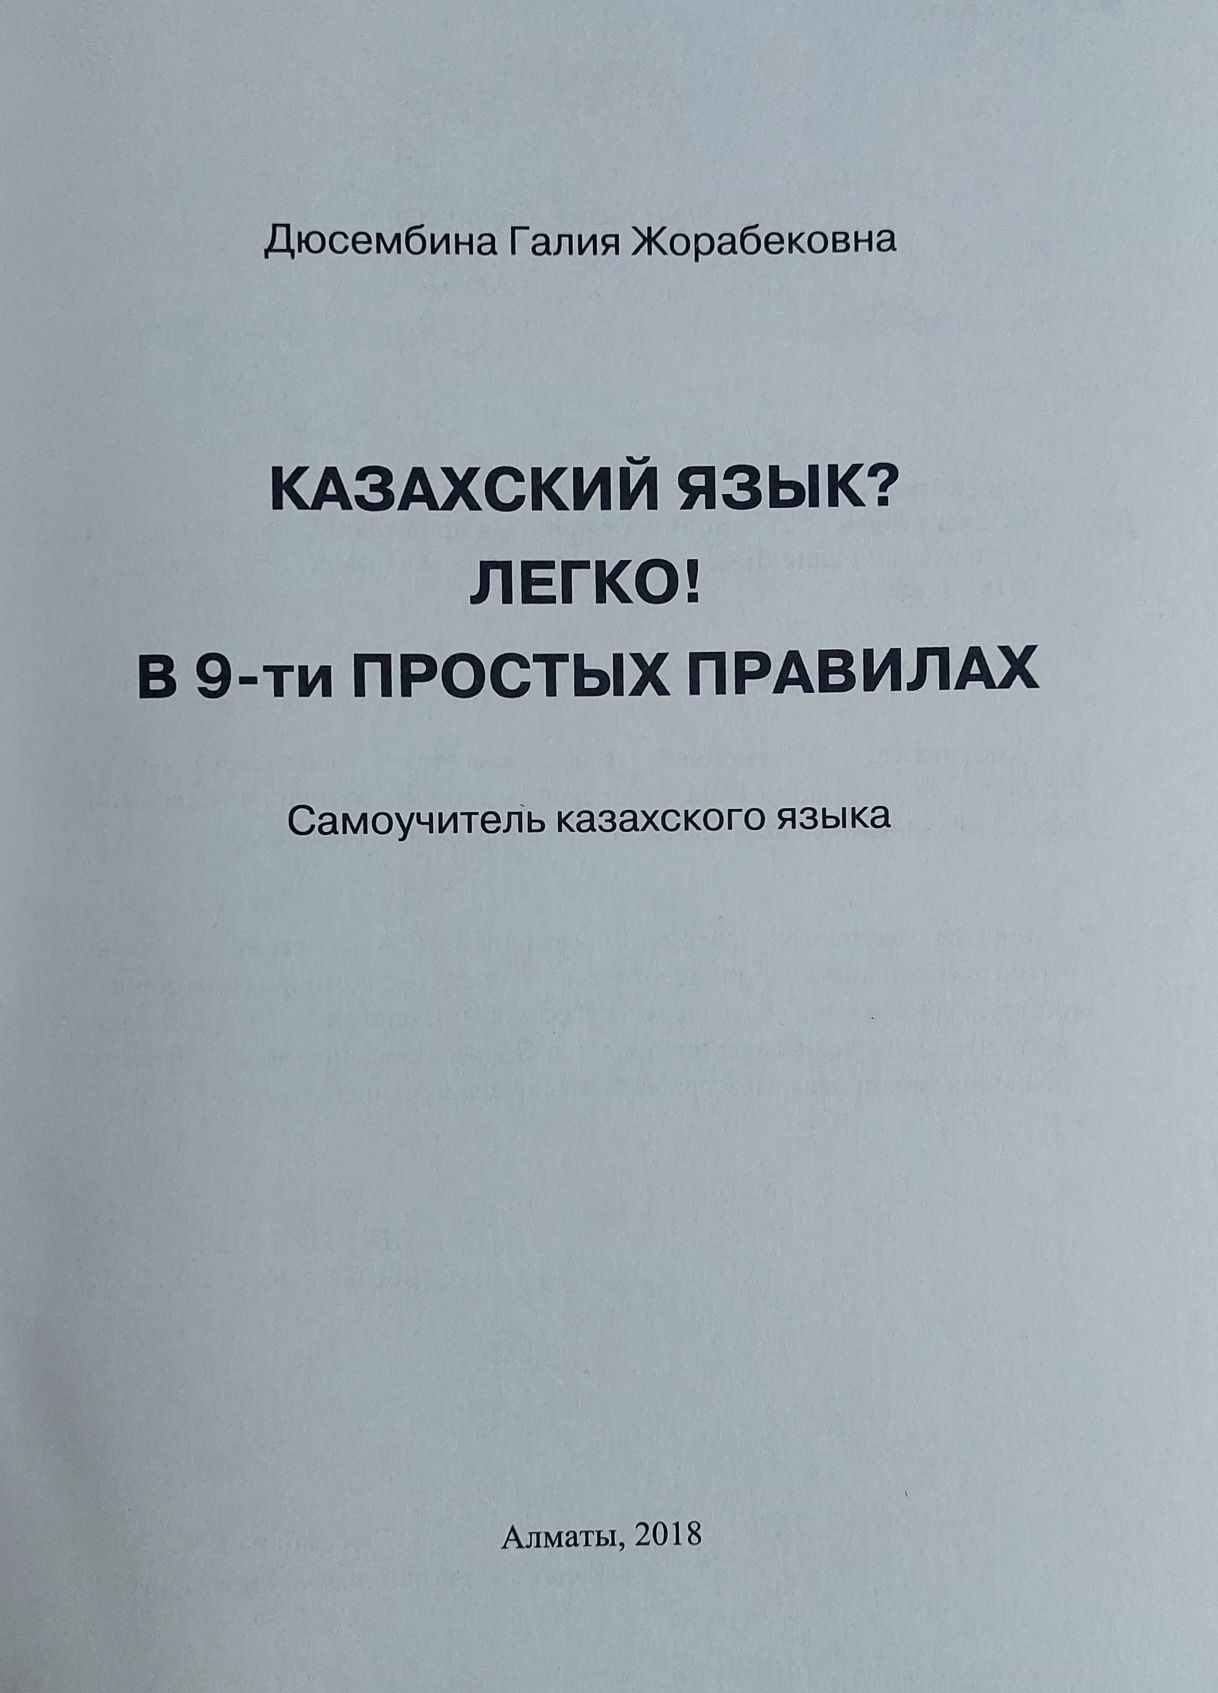 Учебник для изучения казахского языка